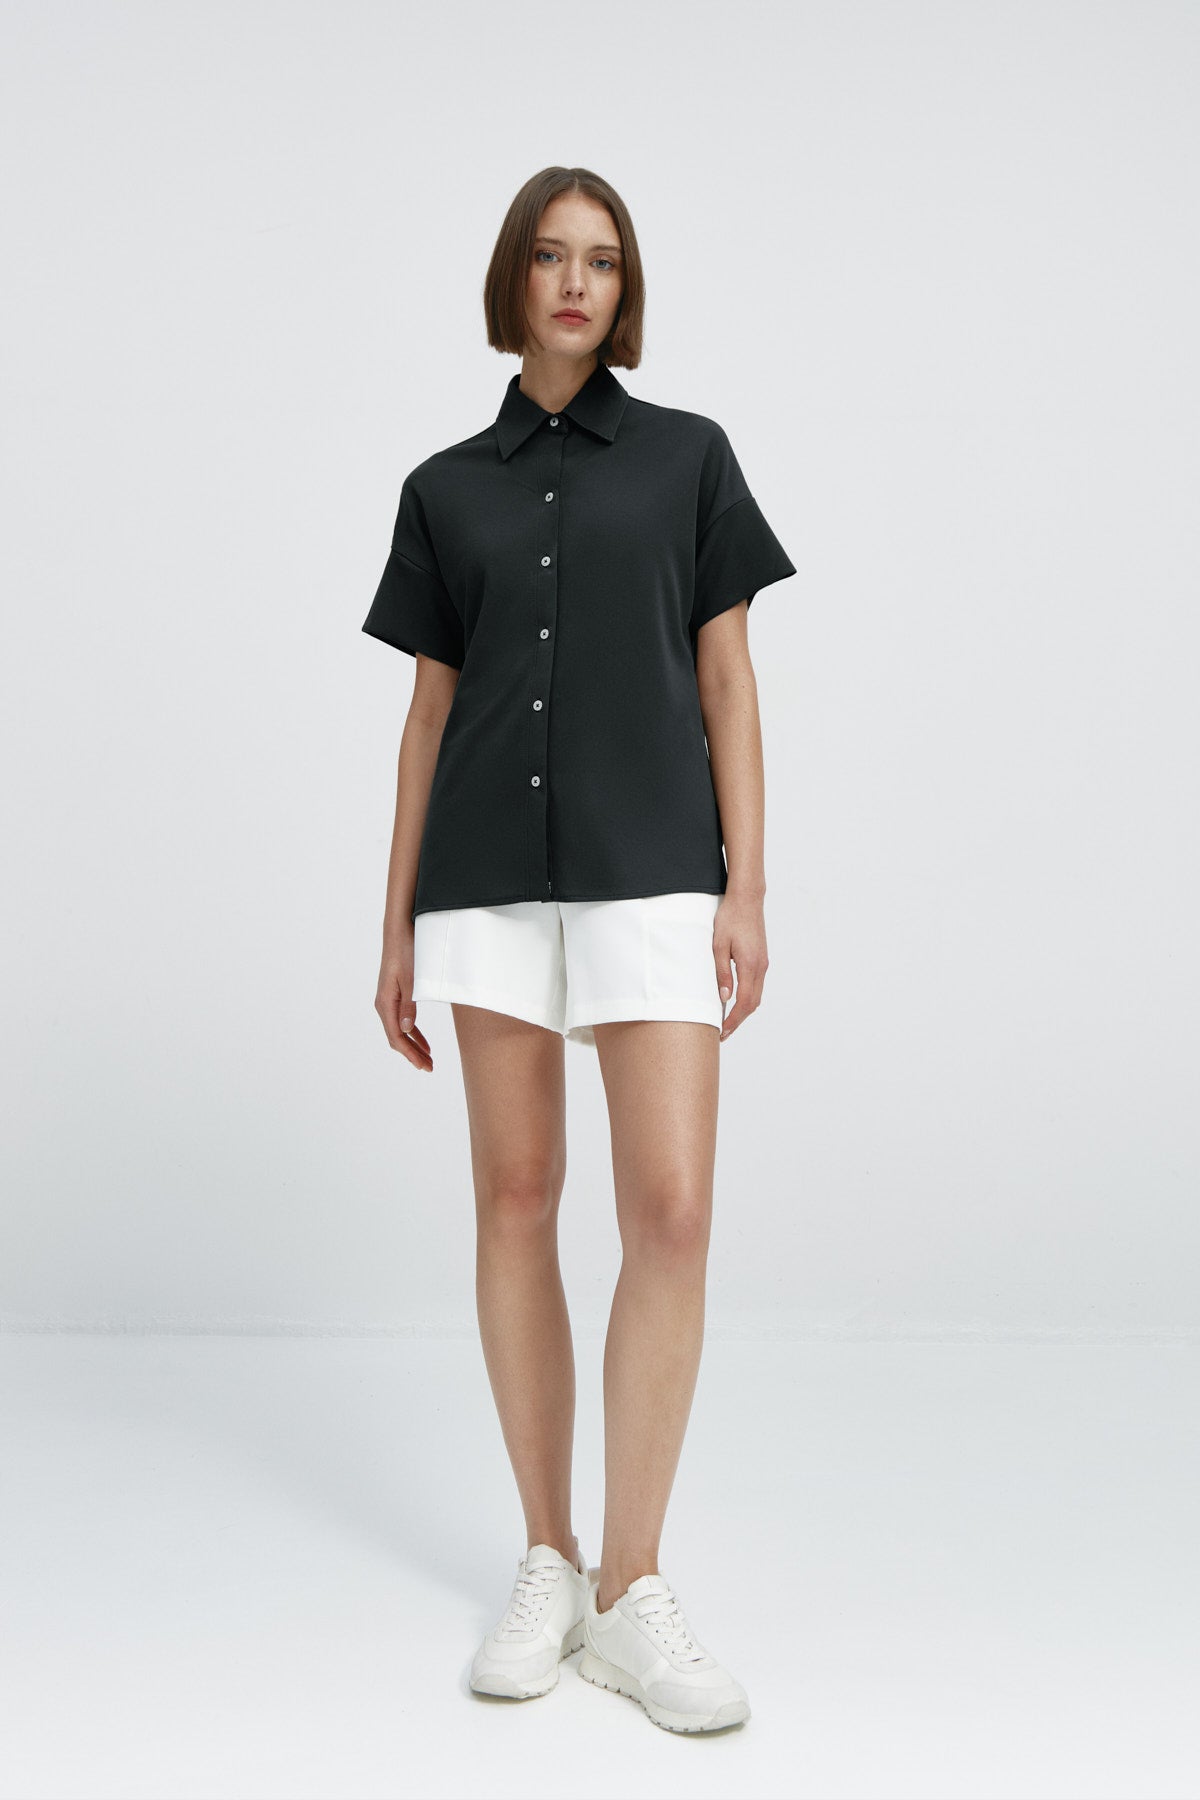 Camisa manga corta mujer negra de Sepiia, estilo y versatilidad en una prenda cómoda y resistente. Foto frente